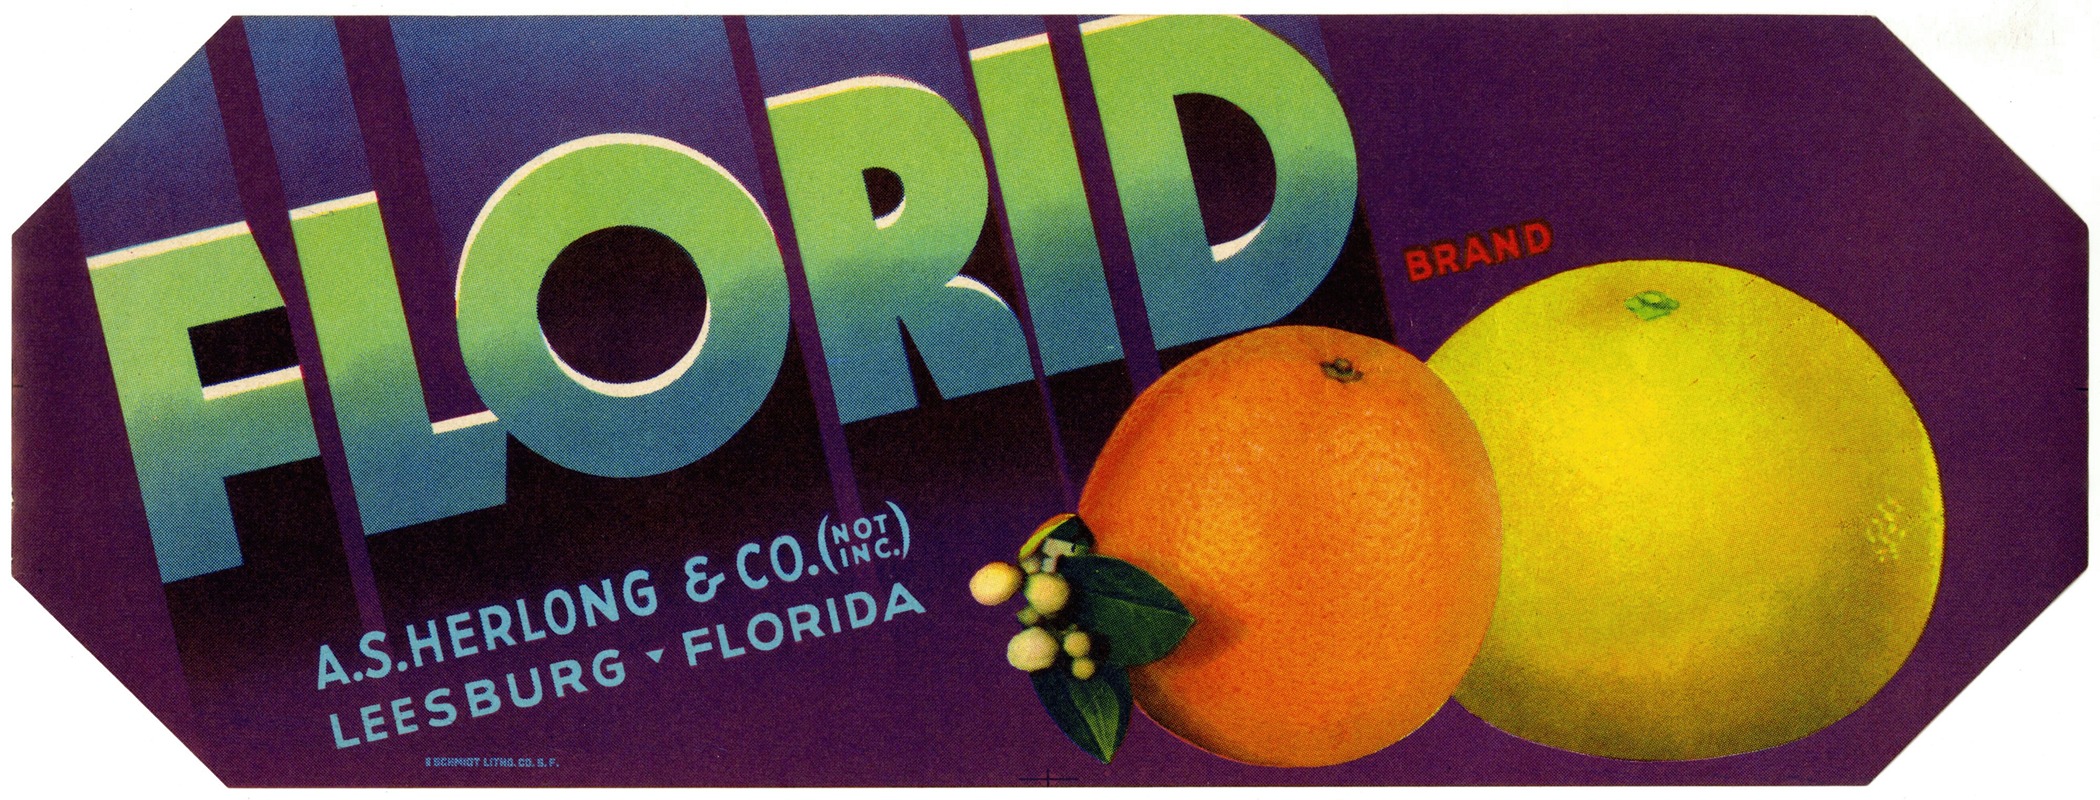 Anonymous - Florid Brand Citrus Label